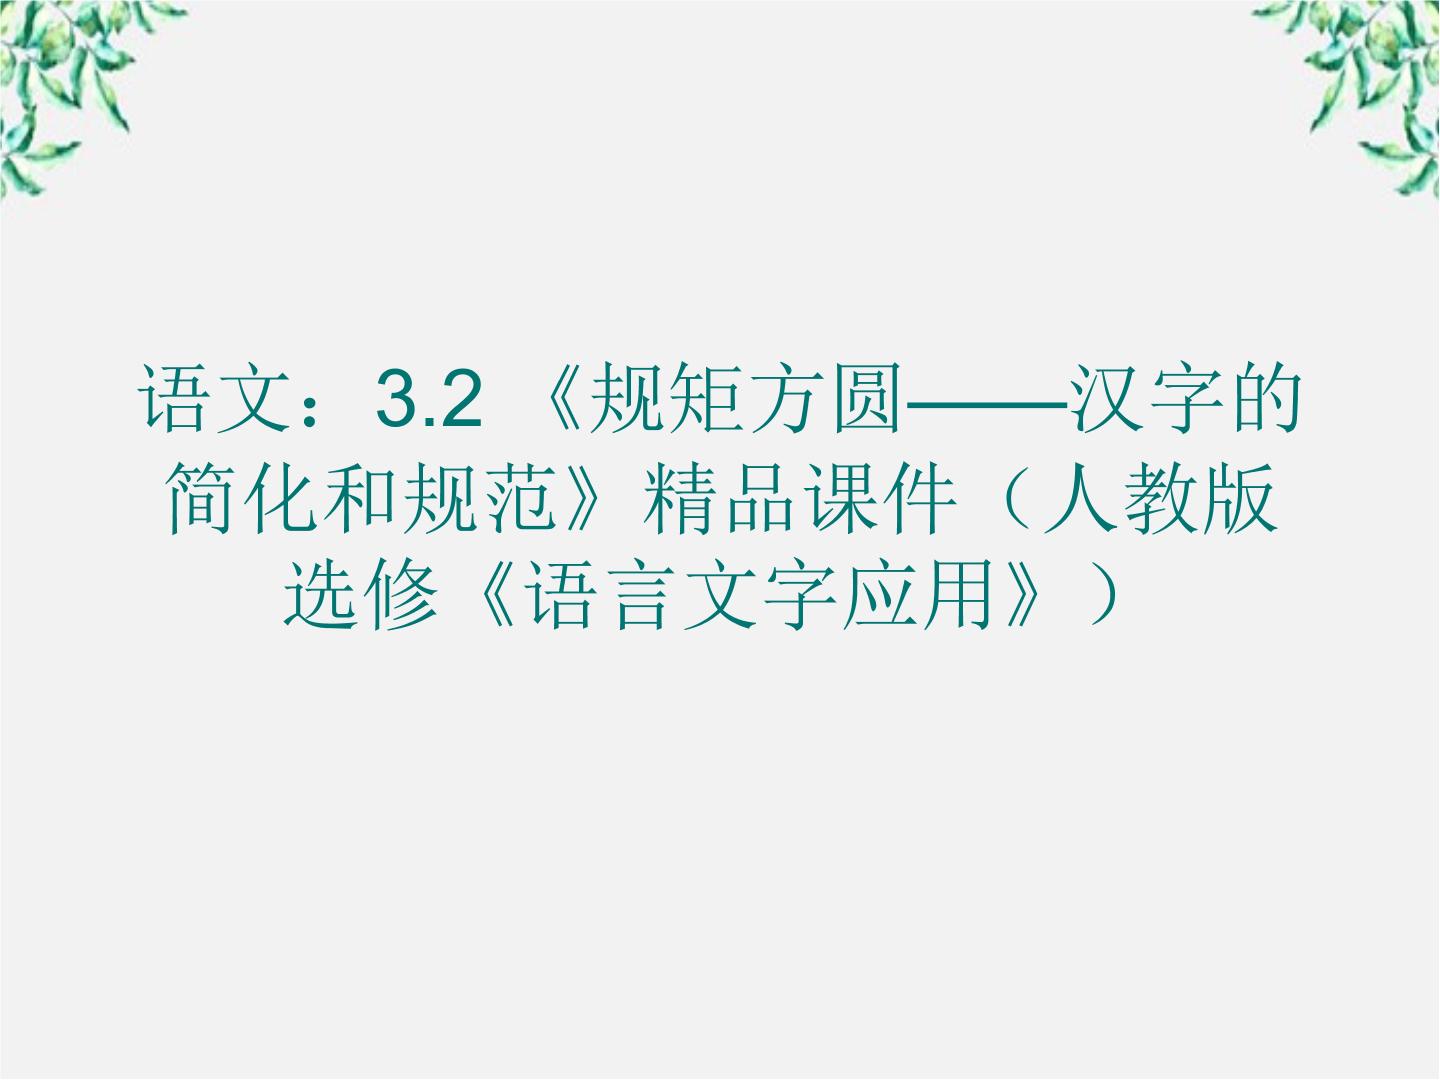 人教版 (新课标)选修《语言文字应用》第三课 神奇的汉字第二节 规矩方圆--汉字的简化和规范教学演示ppt课件